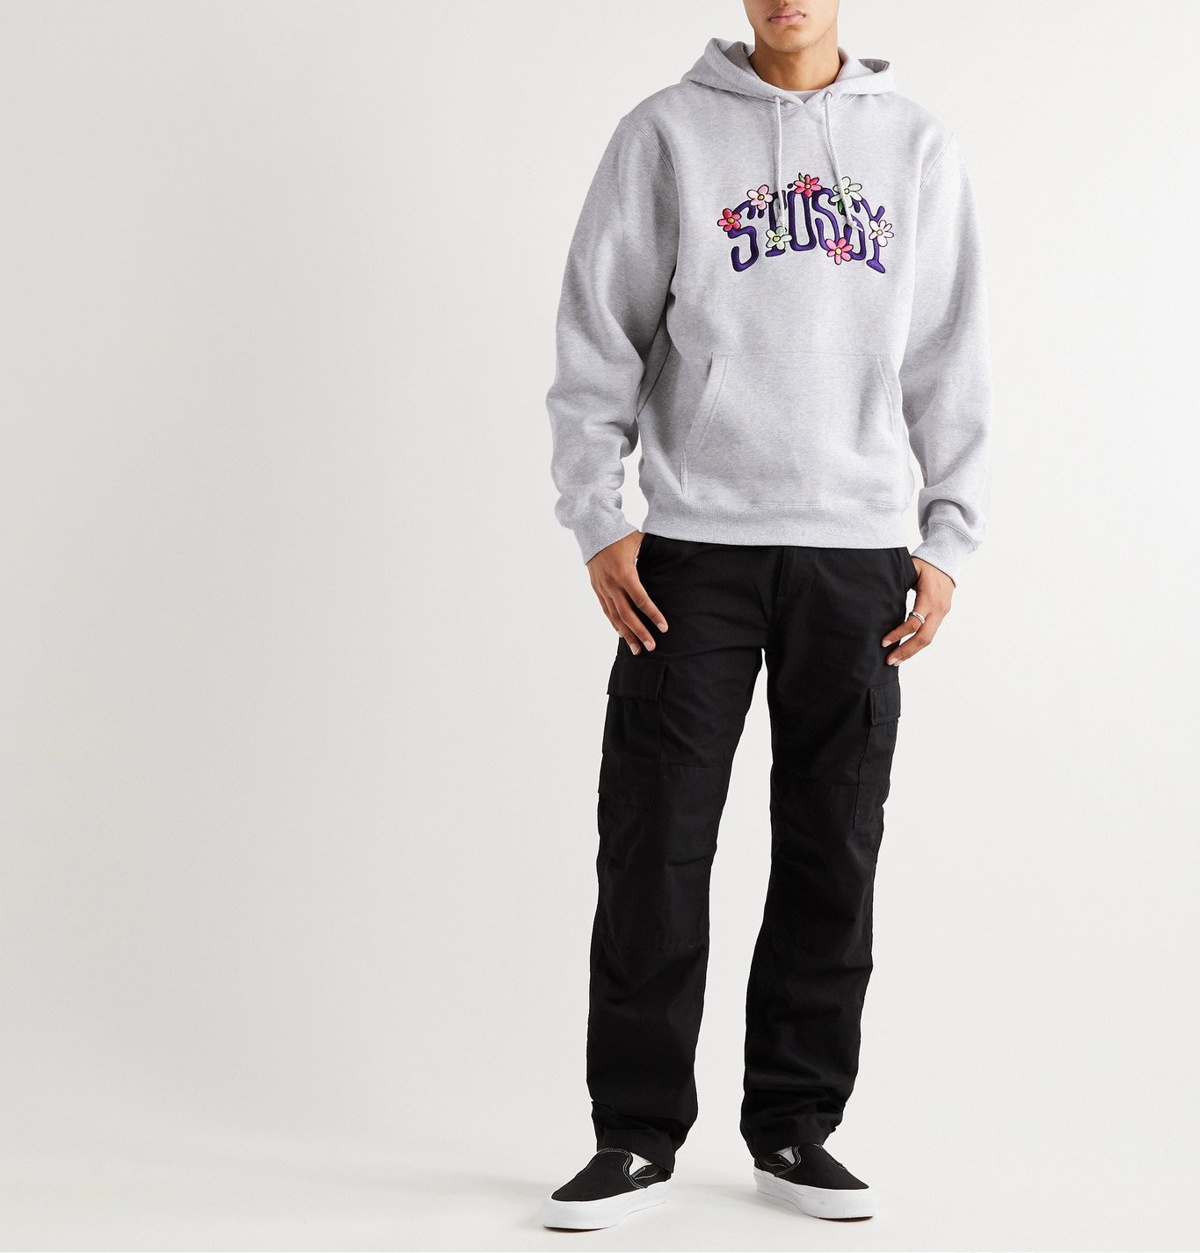 Sweats: Fleece Hooded Sweatshirts by Stüssy – tagged size-m